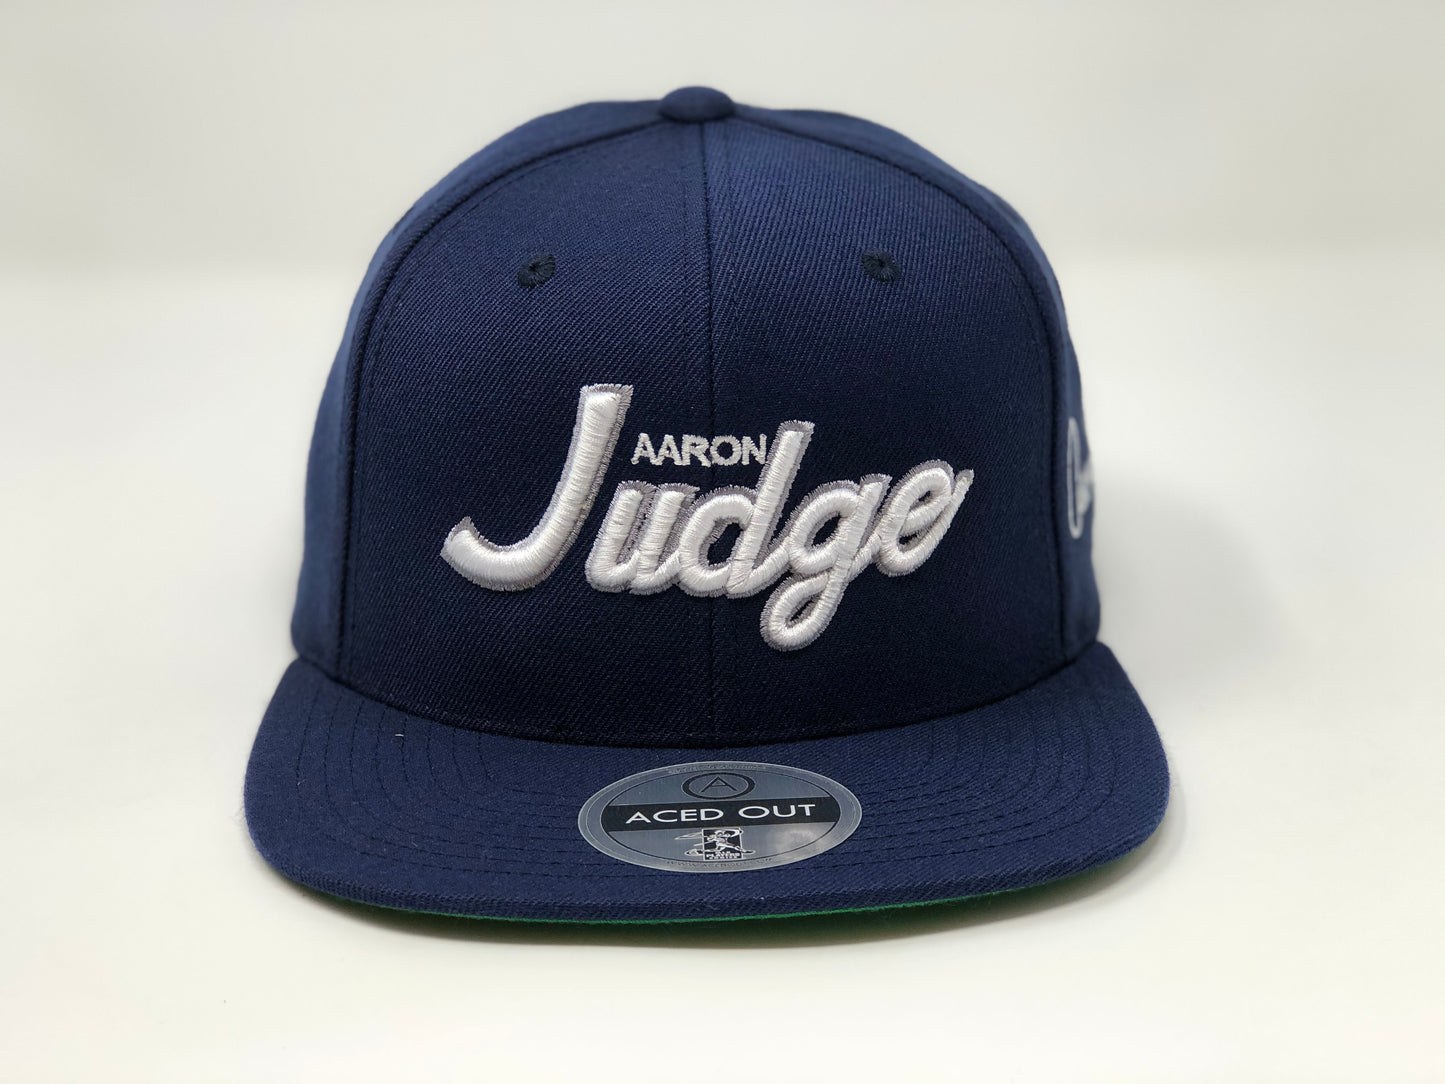 Aaron Judge Script Hat - Navy Snapback